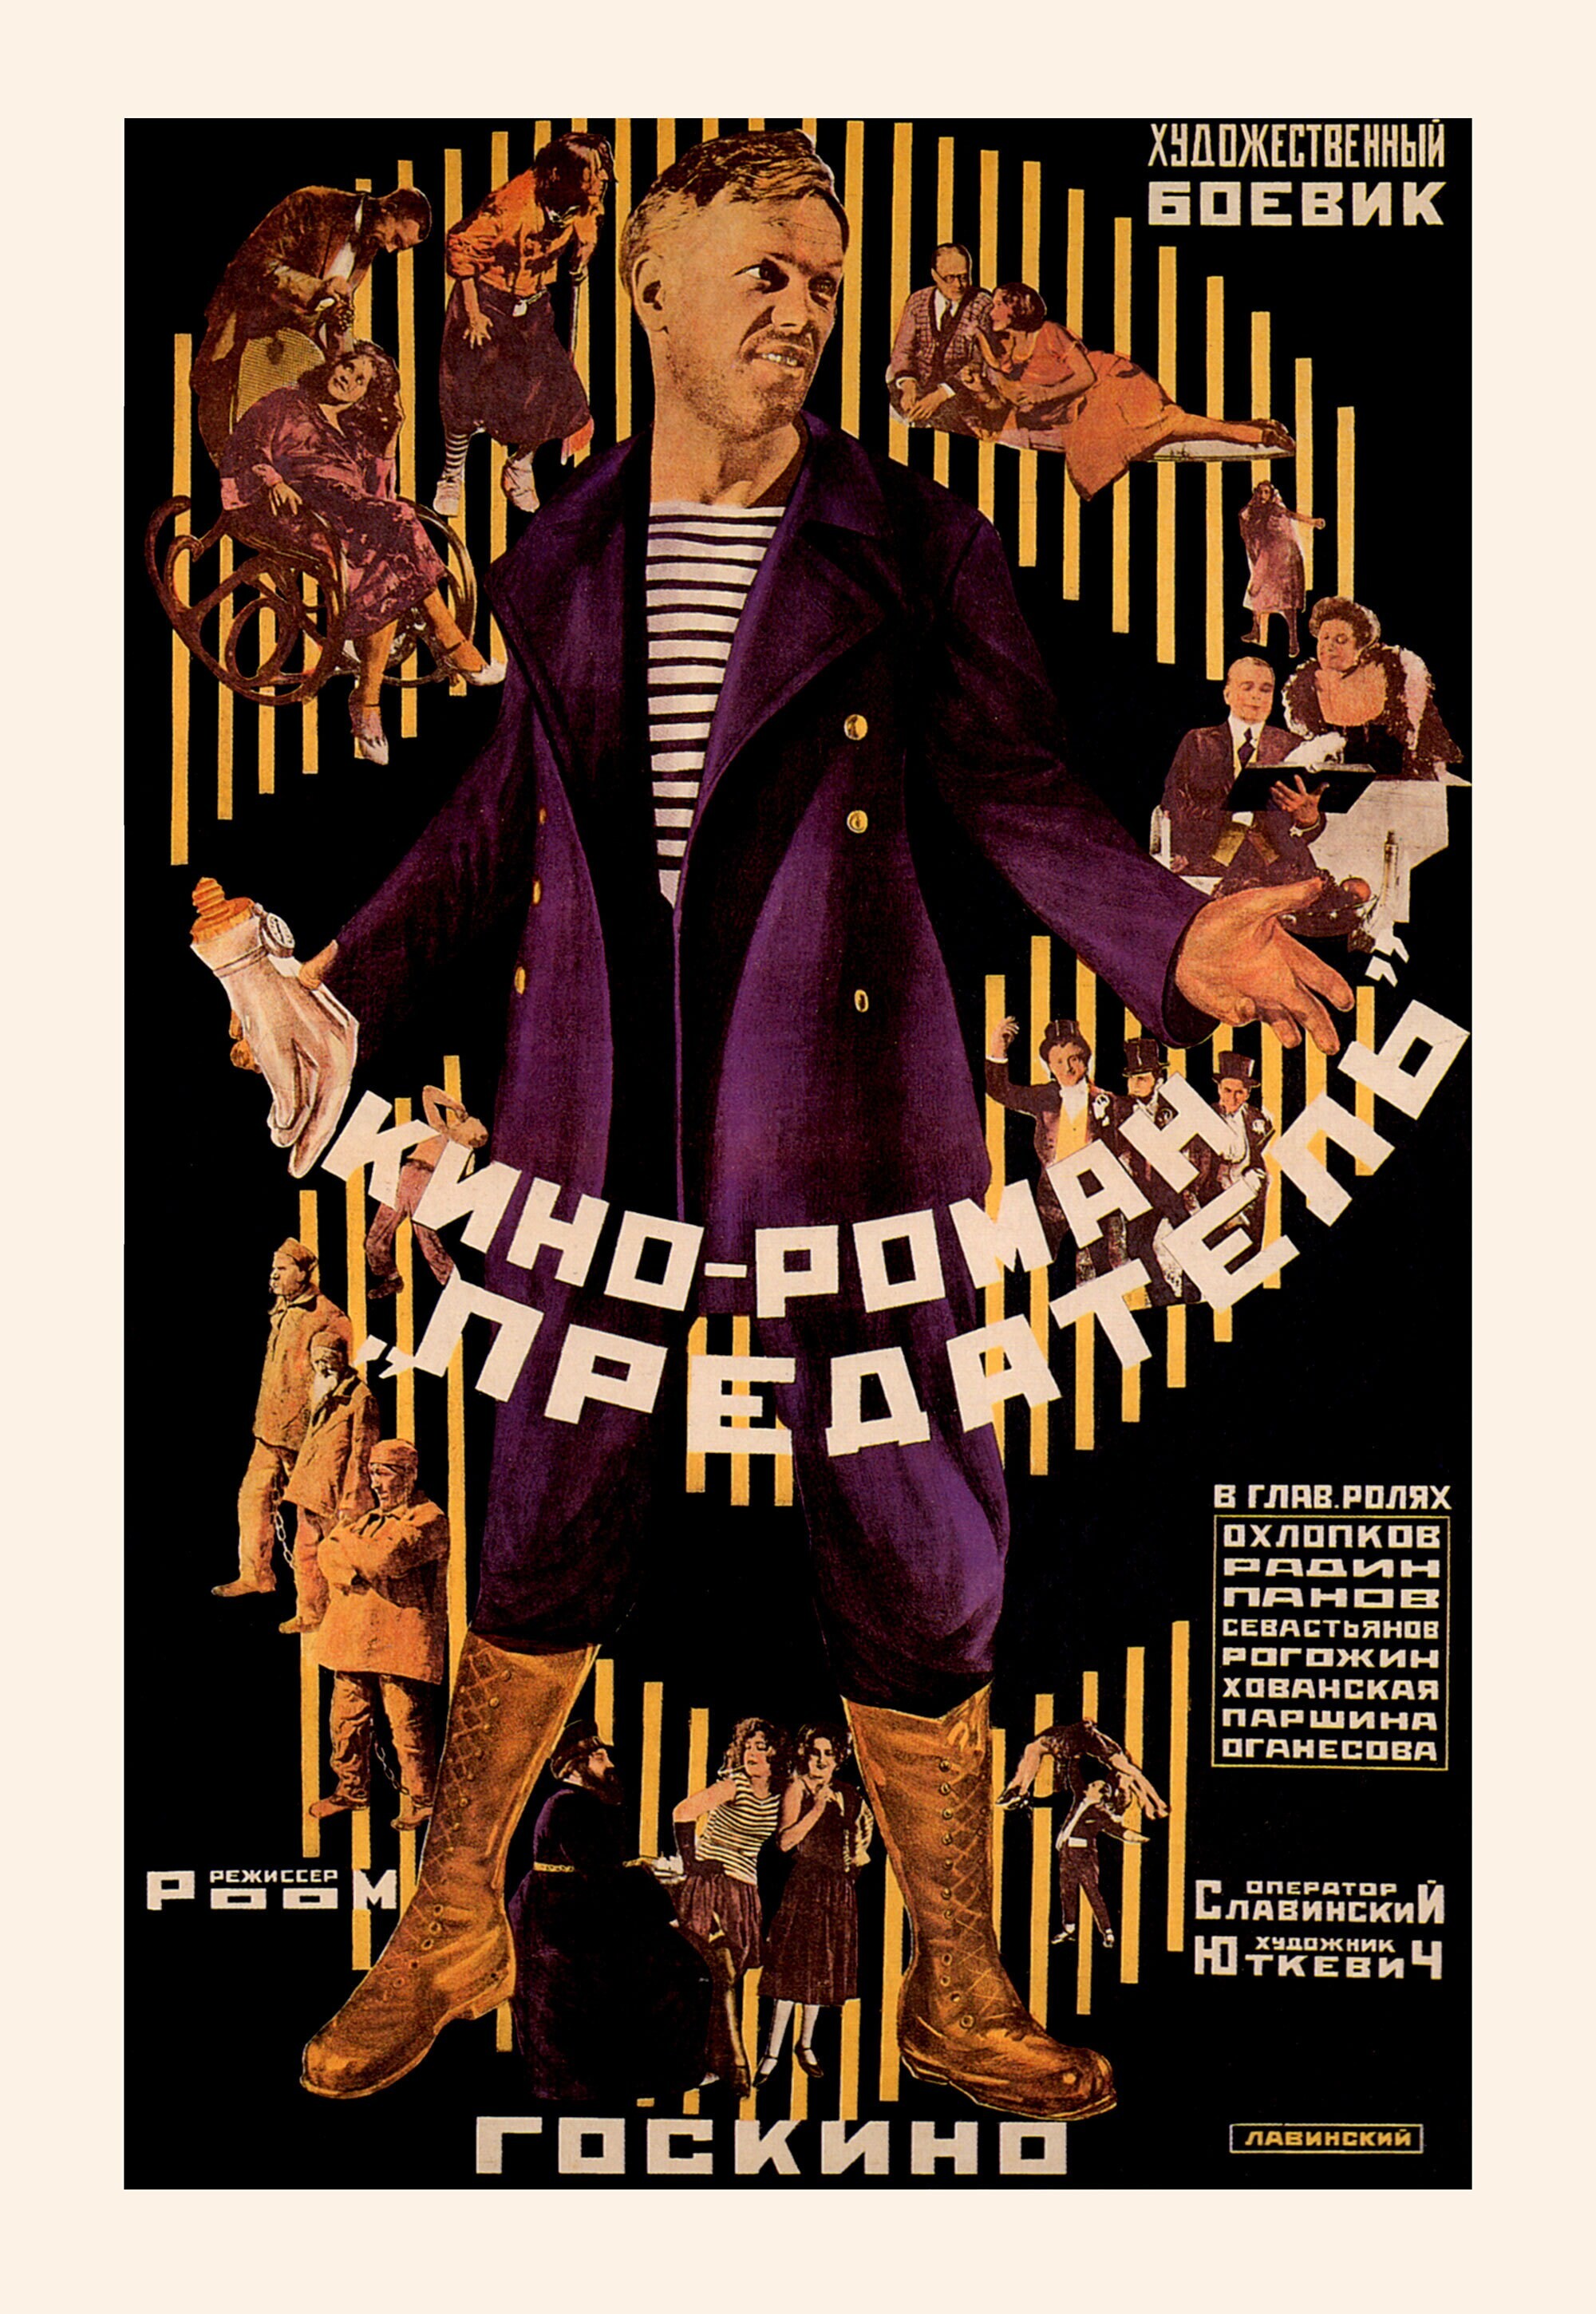 Предатель, 1926 год, режиссёр Абрам Роом, плакат к фильму, автор Антон Лавинский (авангардное советское искусство, 1920-е)